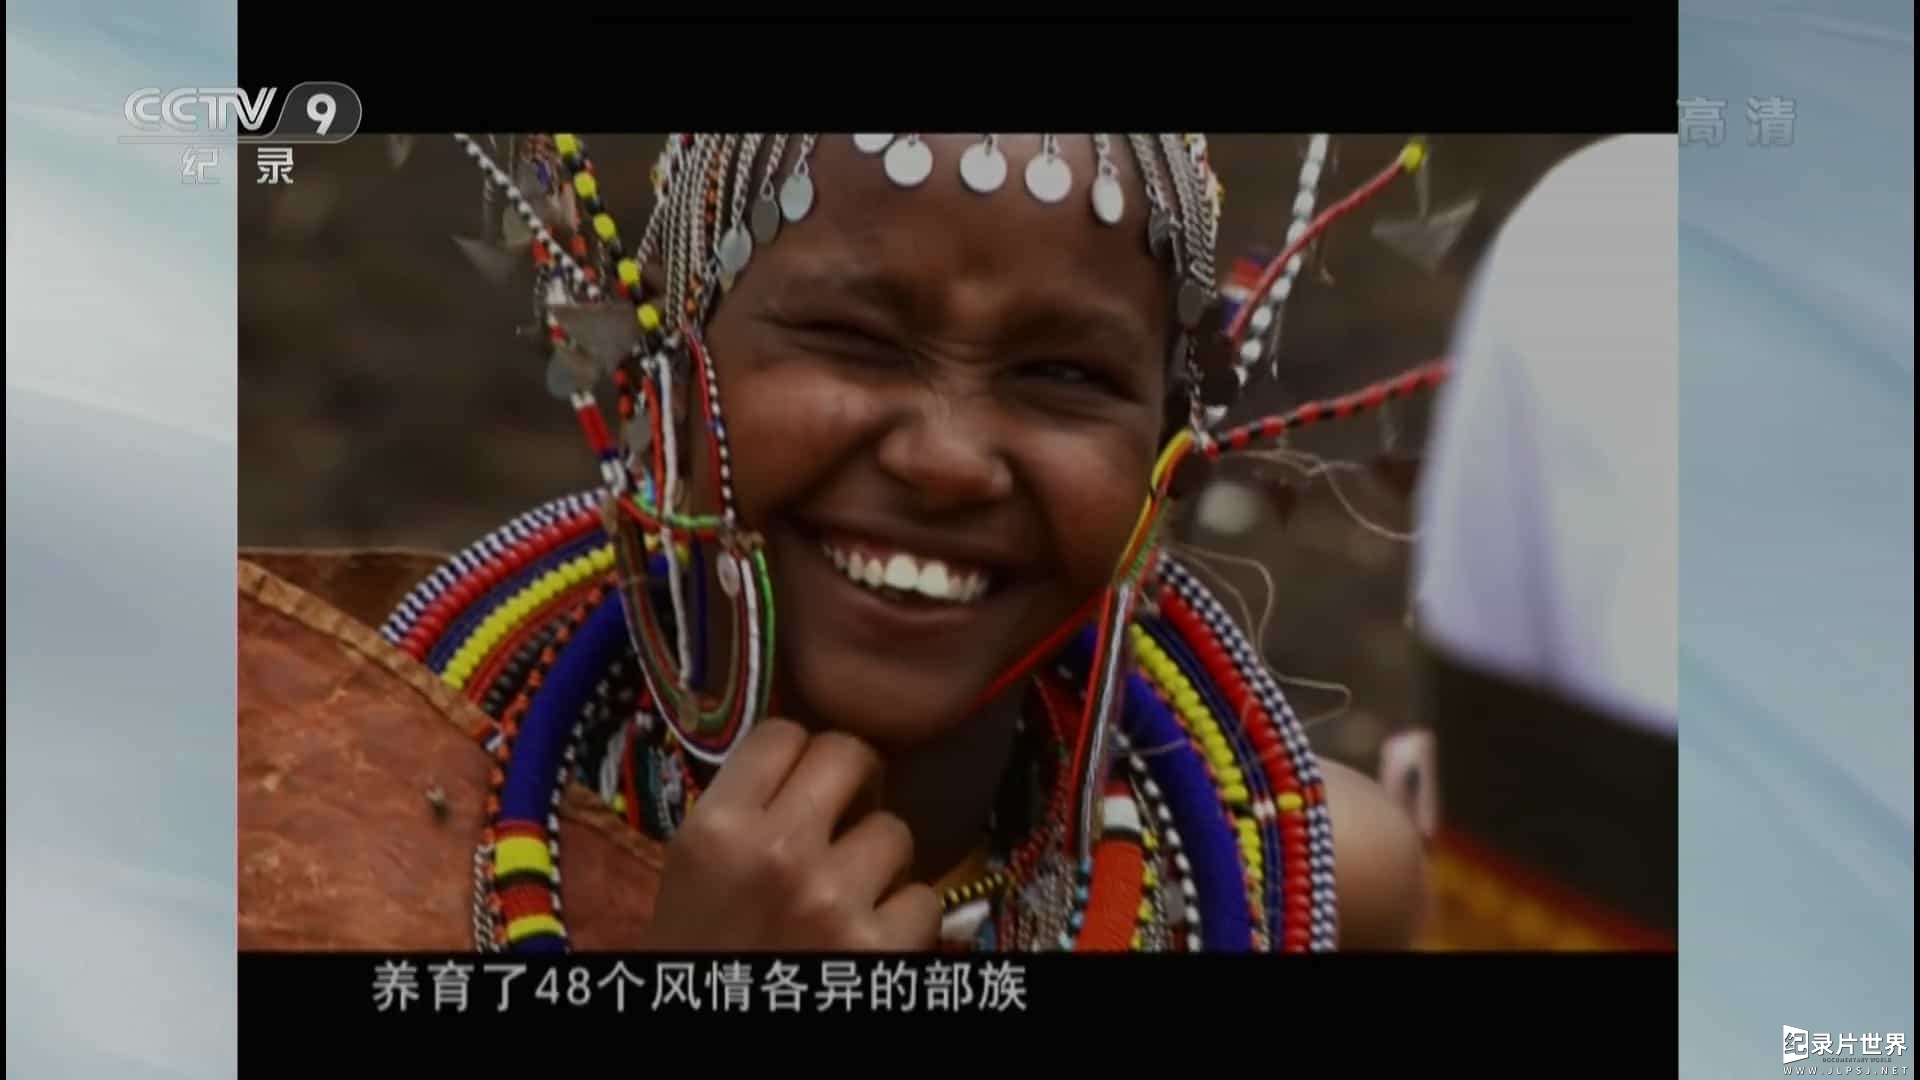 央视纪录片《魅力肯尼亚 Glamorous Kenya 2012》全3集 